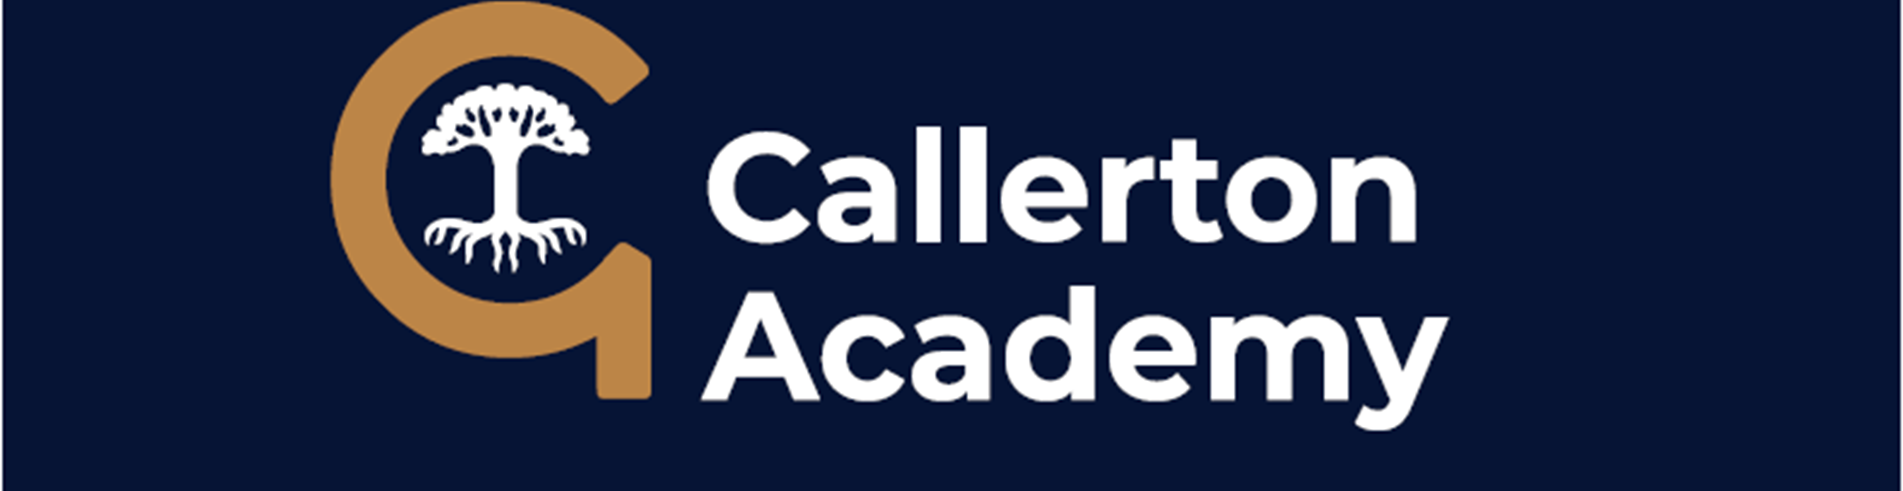 Callerton Academy v3